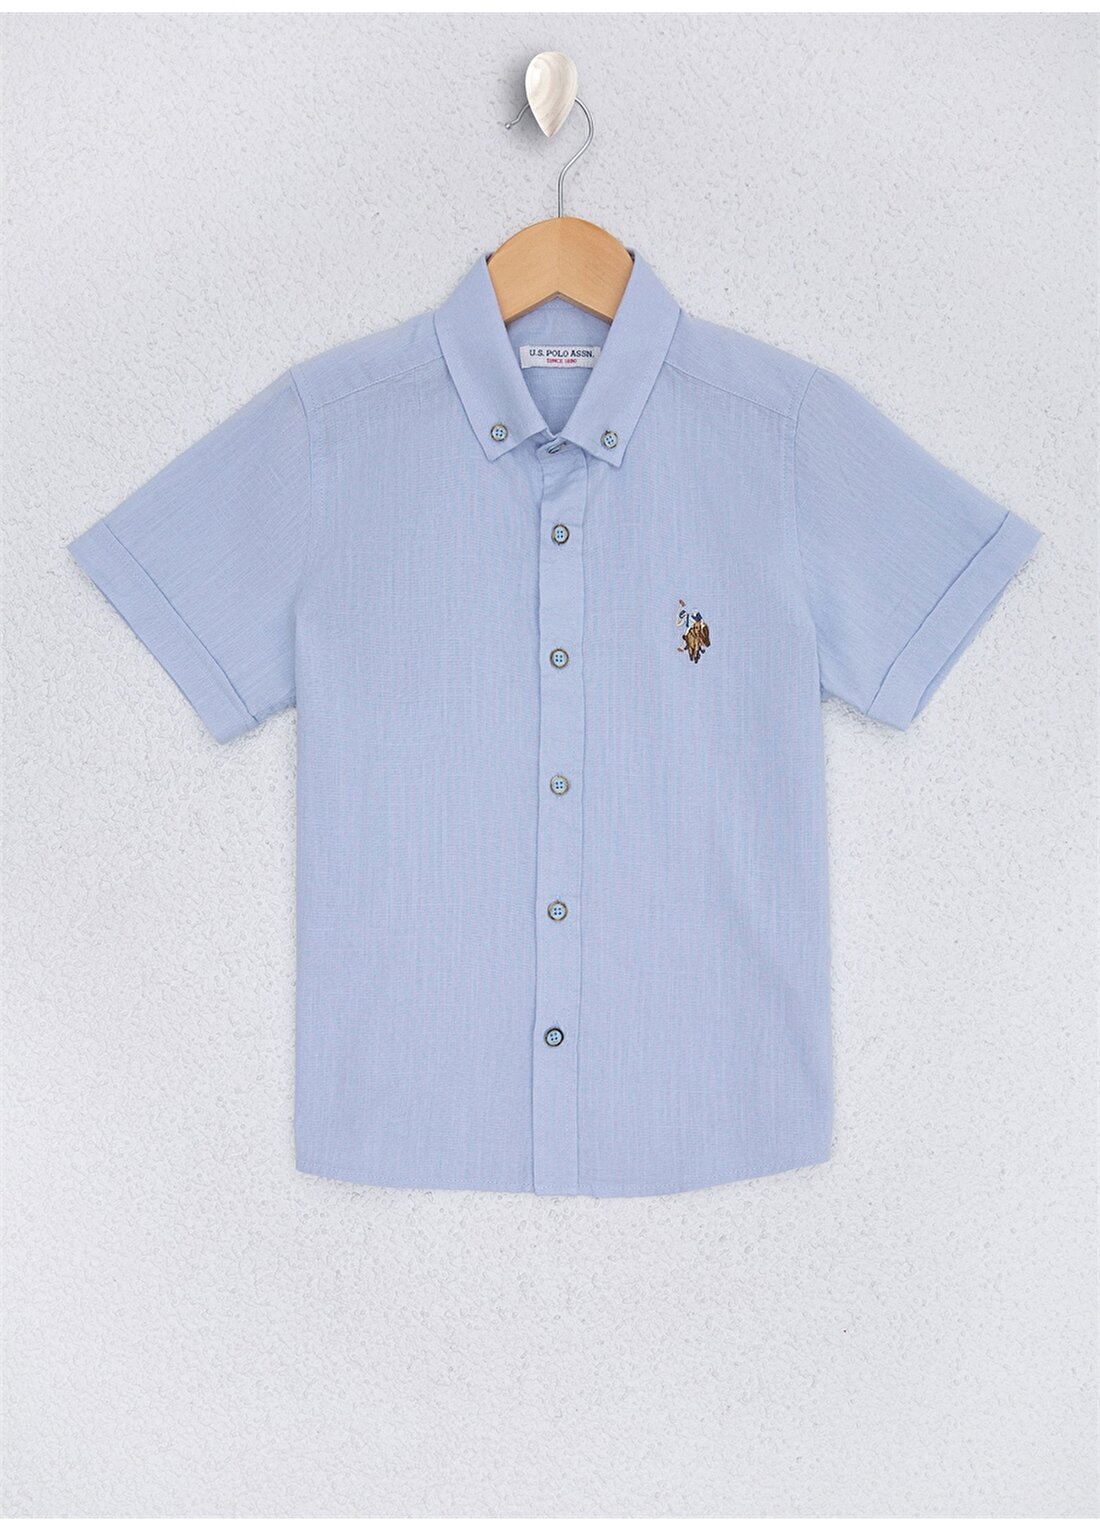 U.S. Polo Assn. Açık Mavi Erkek Çocuk Gömlek